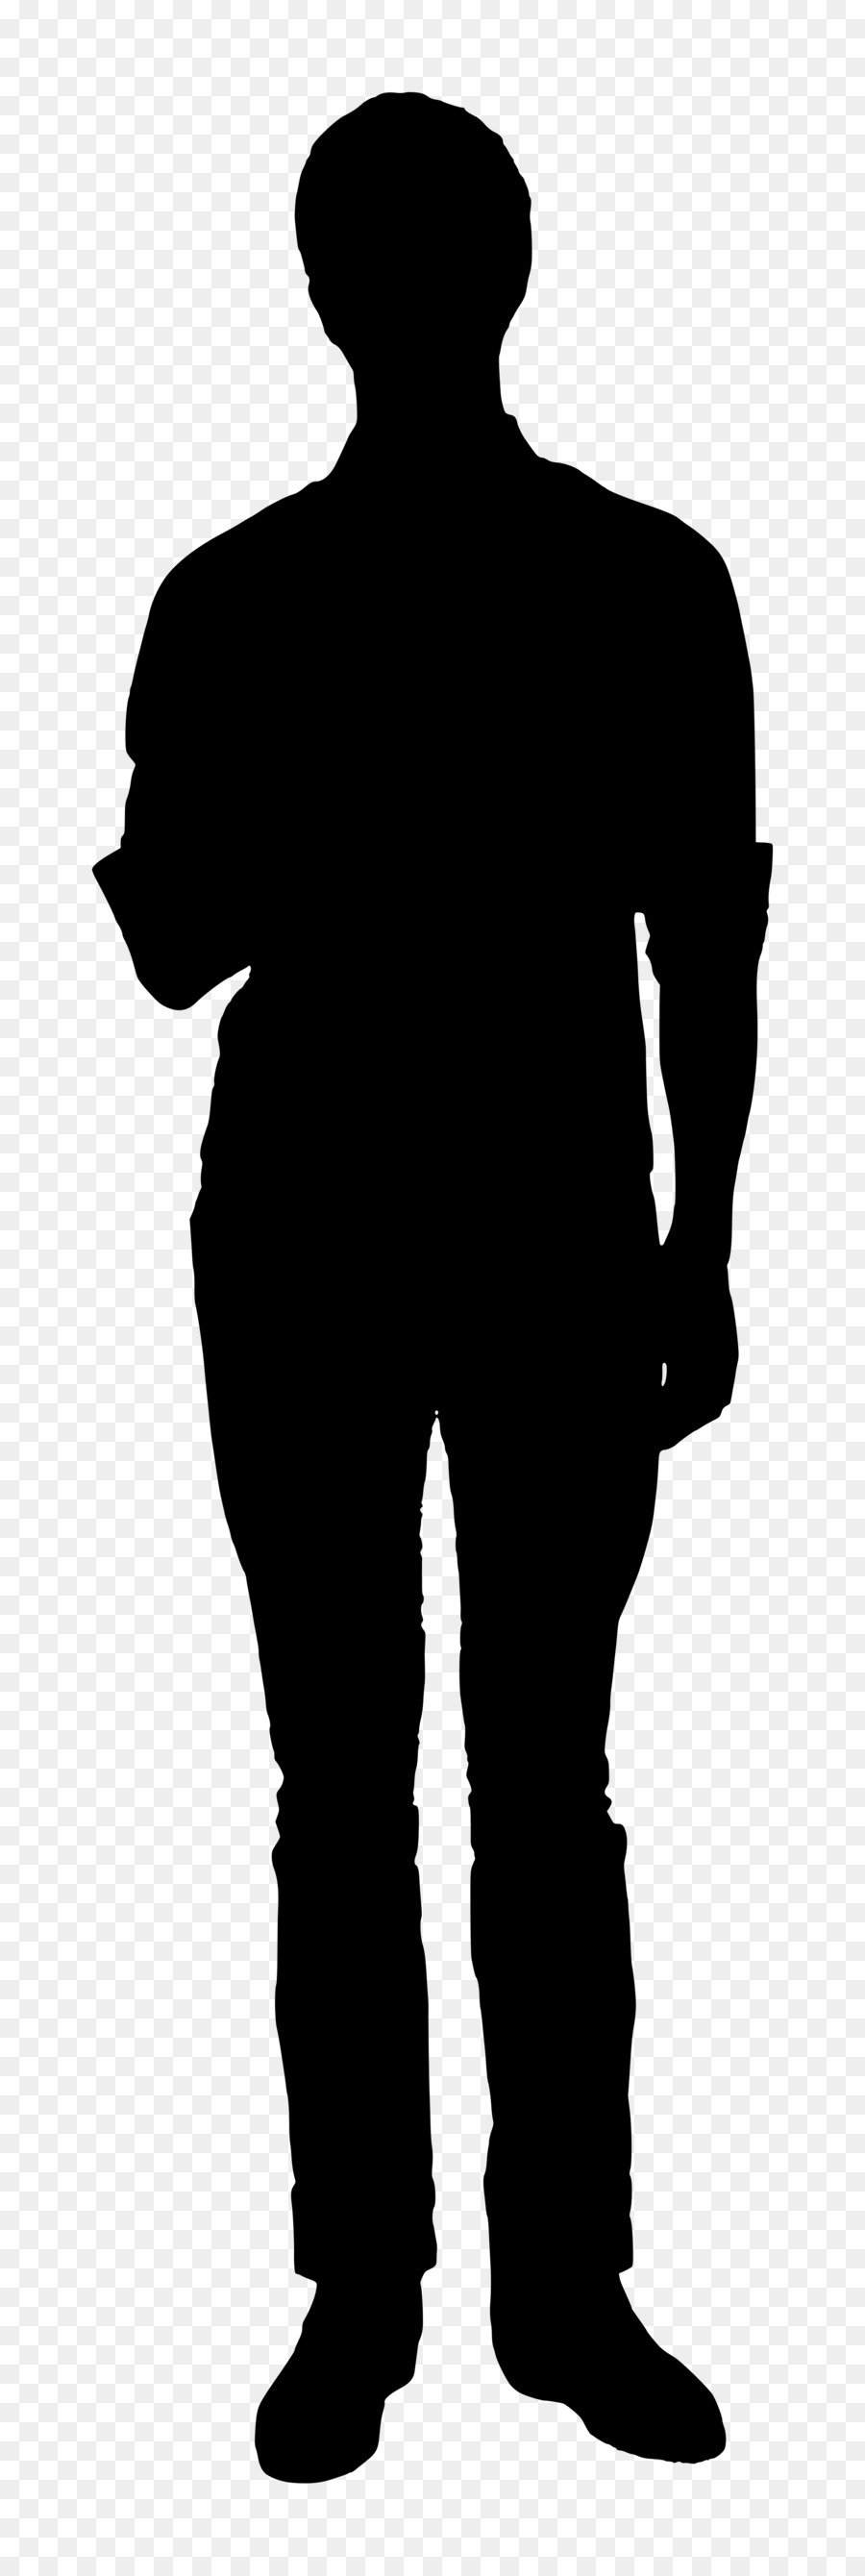 Silhouette Persona Clip art - silhouette